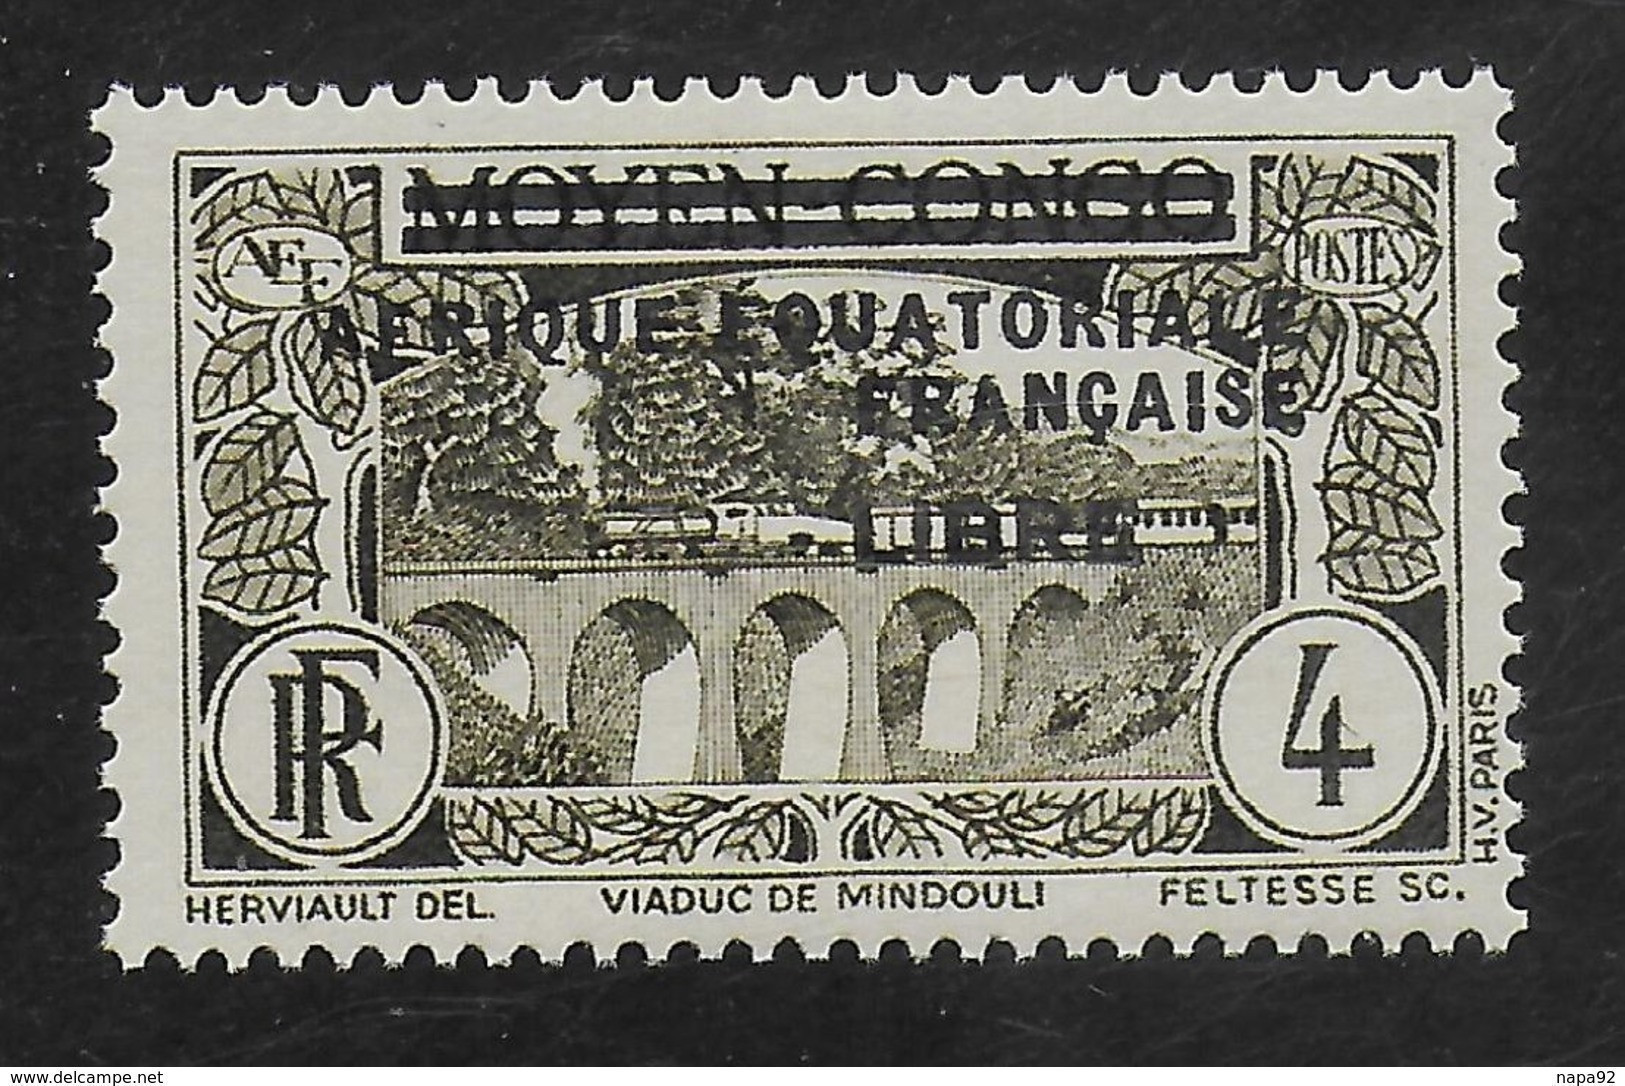 AFRIQUE EQUATORIALE FRANCAISE - AEF - A.E.F. - 1940 - YT 102** - Nuevos